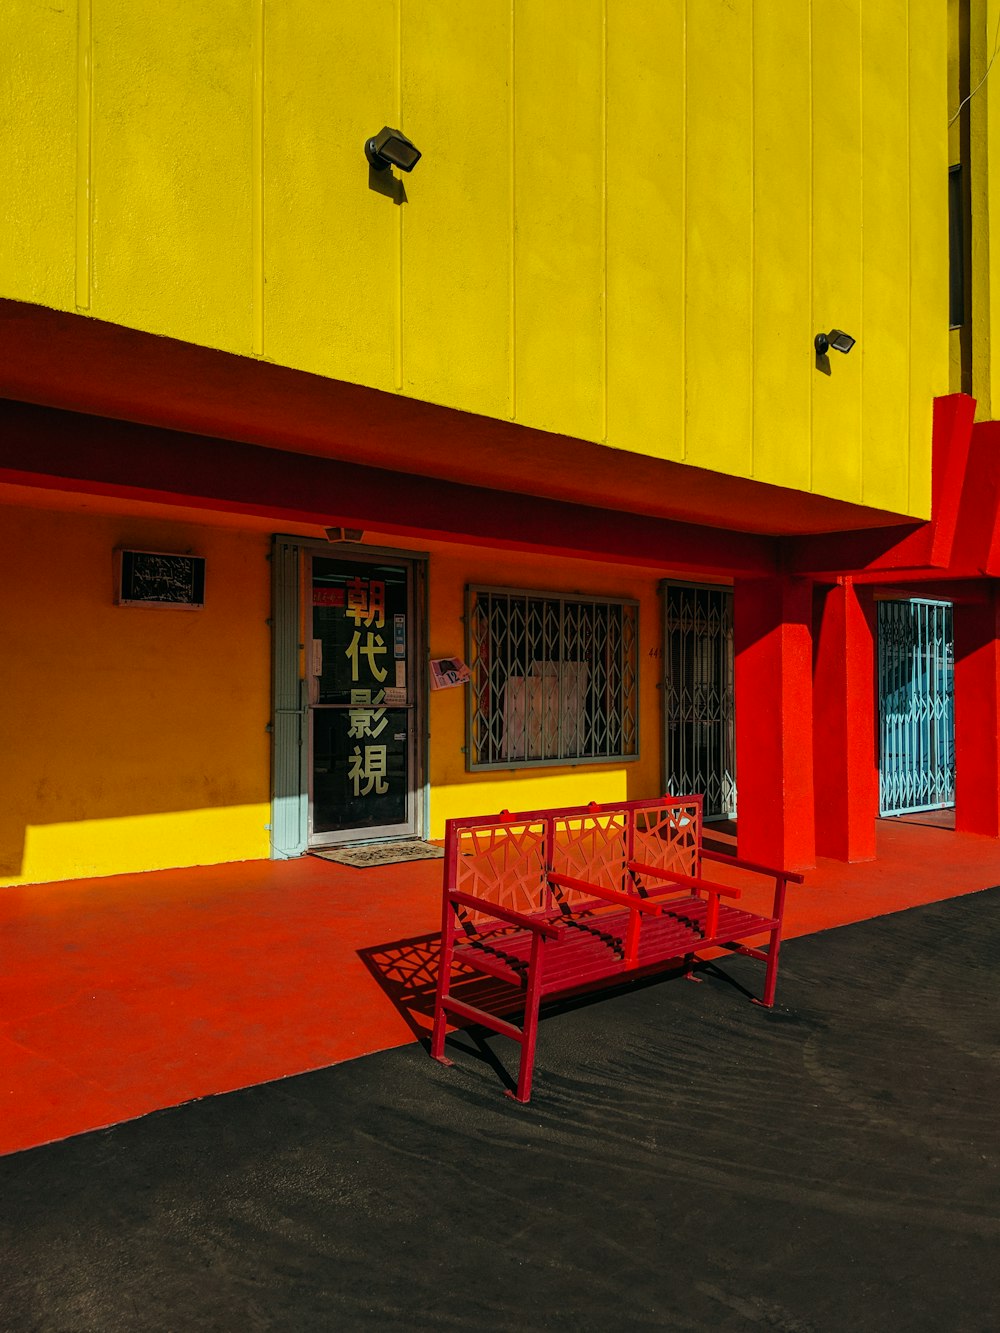 panchina rossa davanti alla facciata del negozio